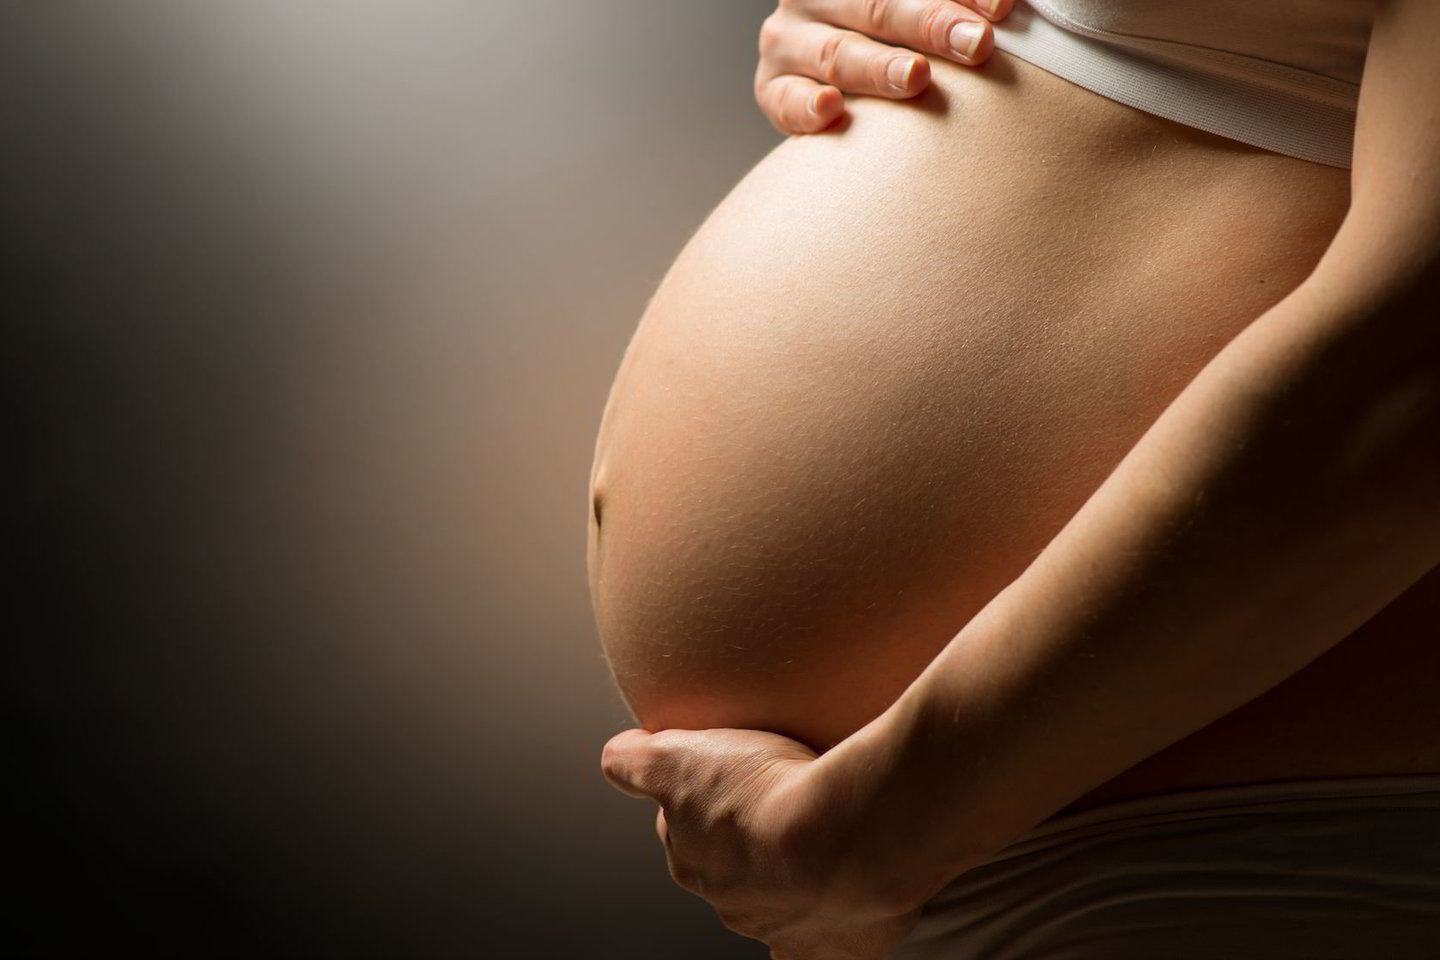  Daugiau nei pusė gimdyvių rizikuoja vaiko sveikata.<br> 123rf.com nuotr.